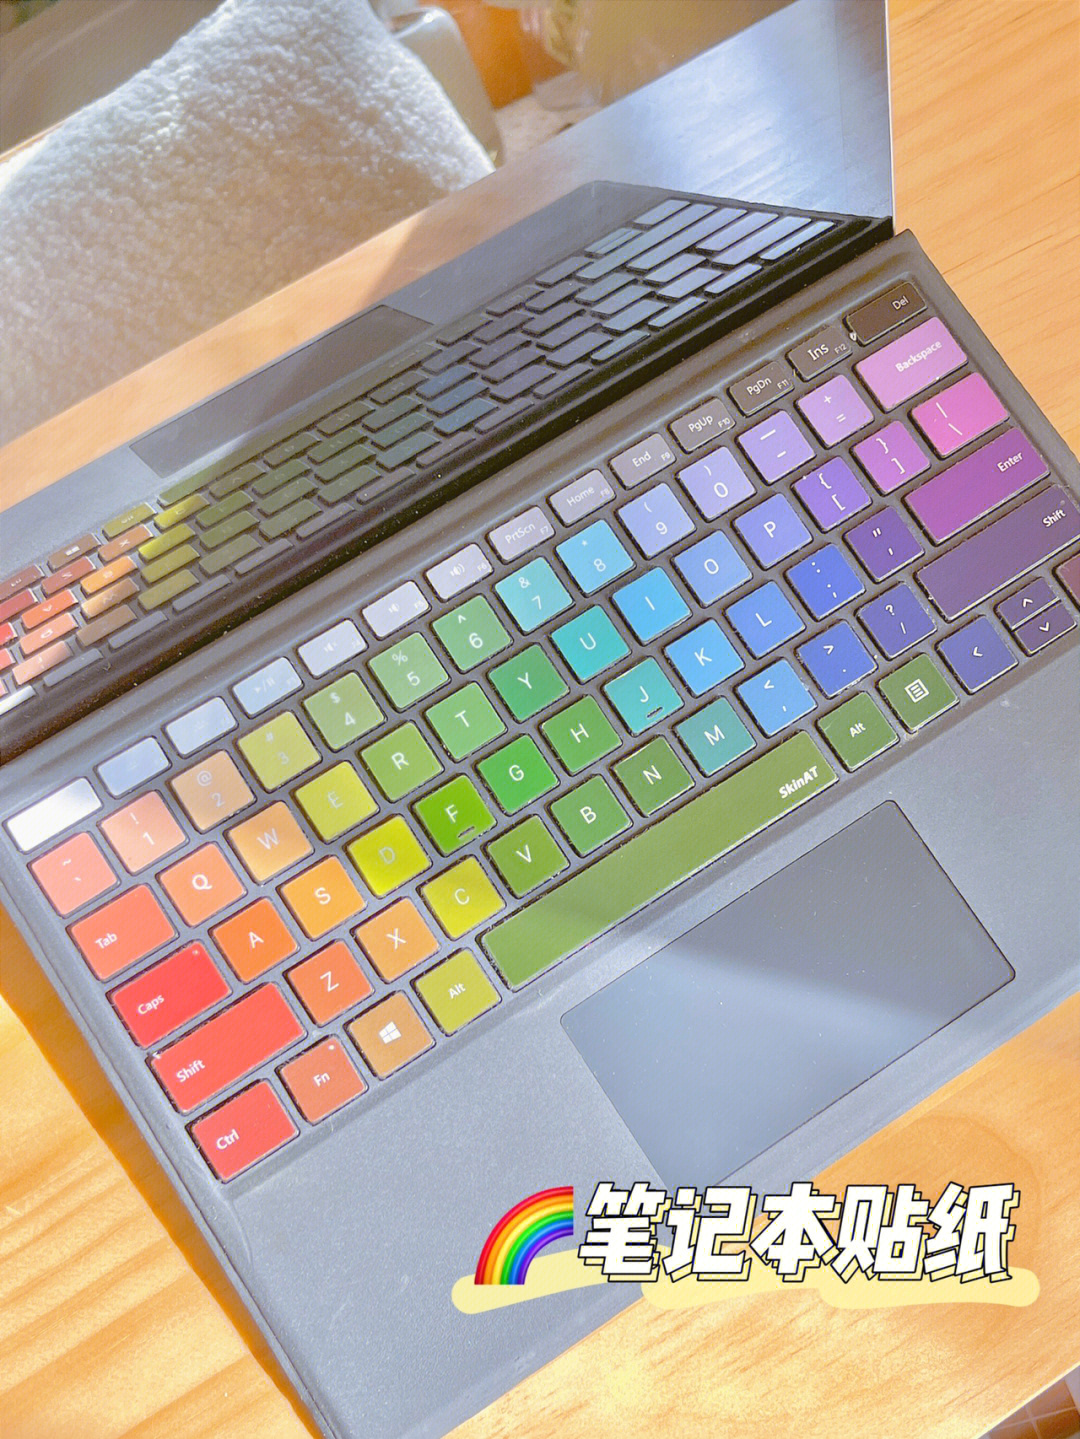 96彩虹键盘又酷又少女,让工作心情都是彩色的.